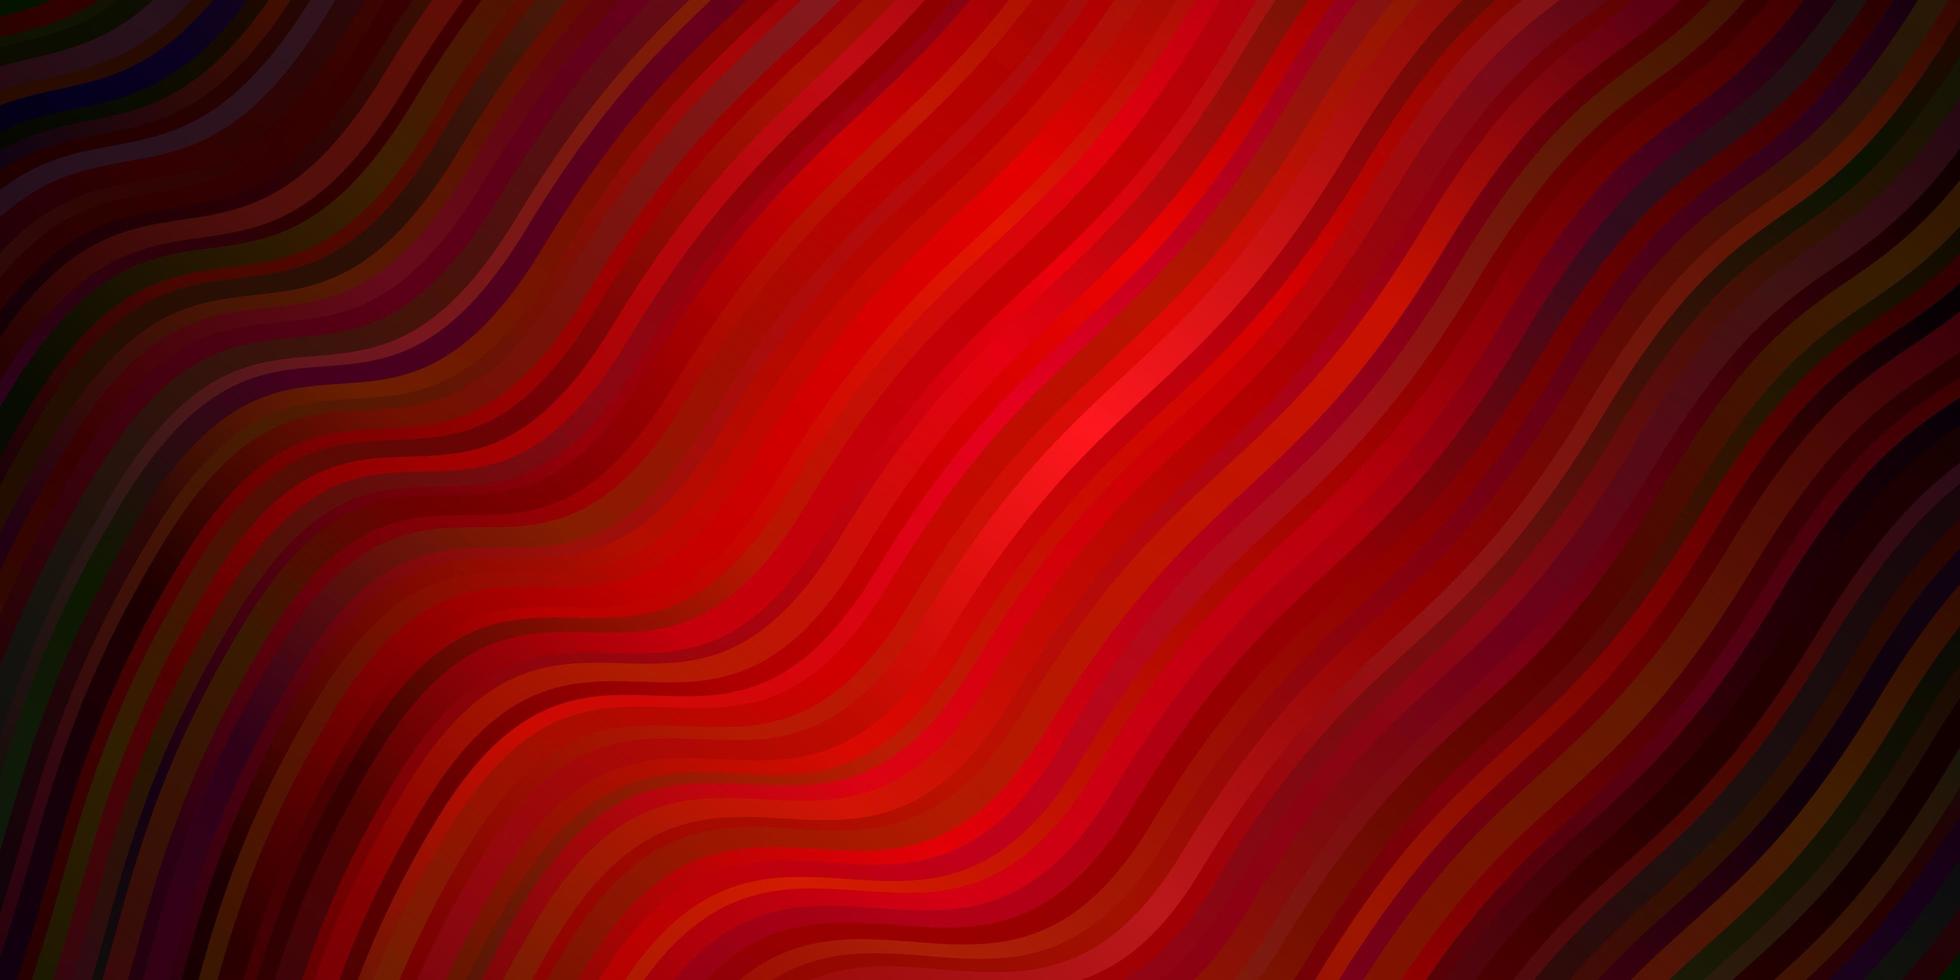 padrão de vetor vermelho escuro com linhas curvas.